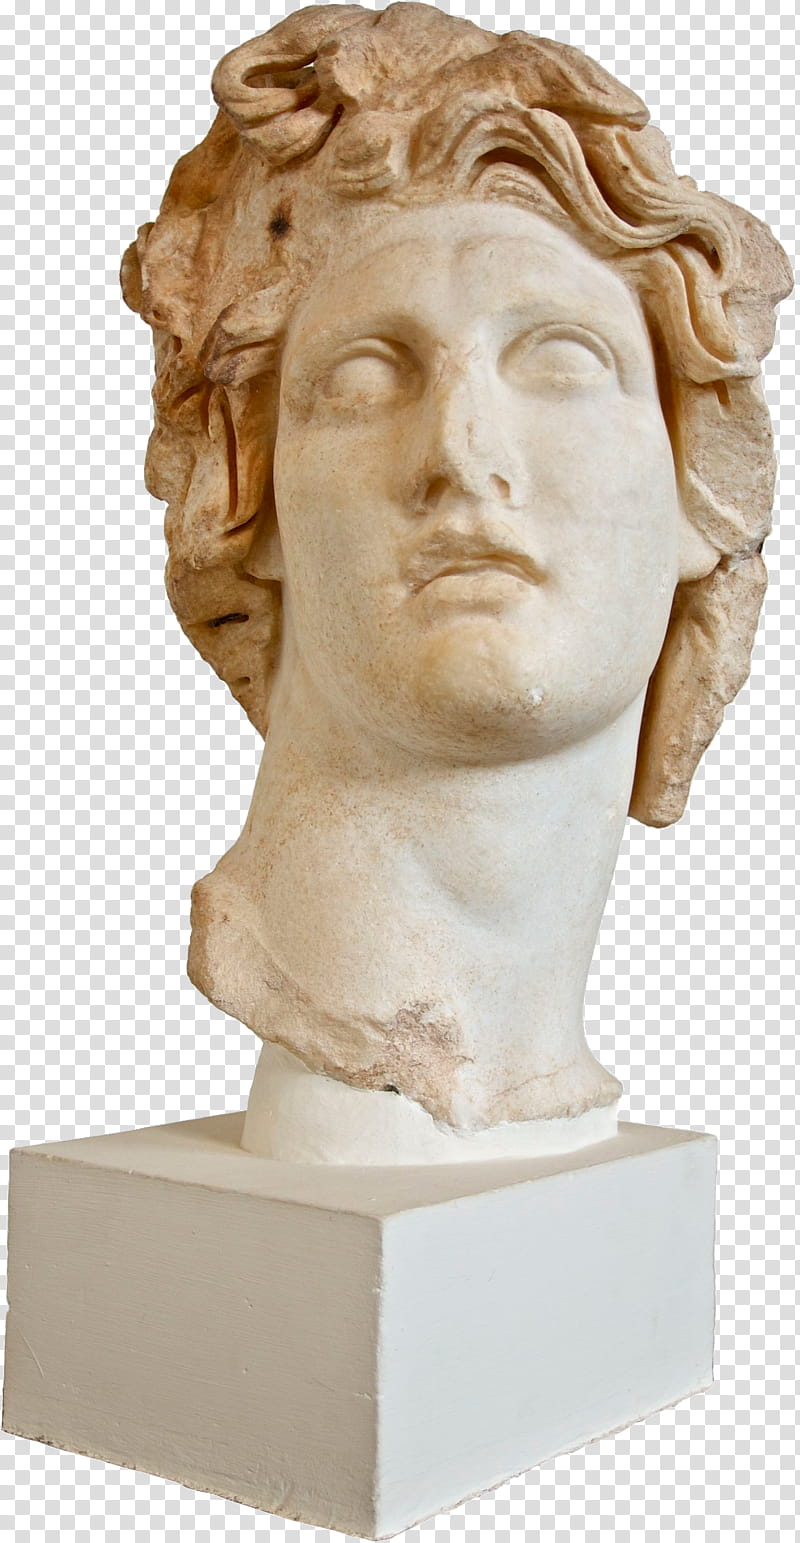 V a p o r w a v e, renaissance head bust transparent background PNG clipart